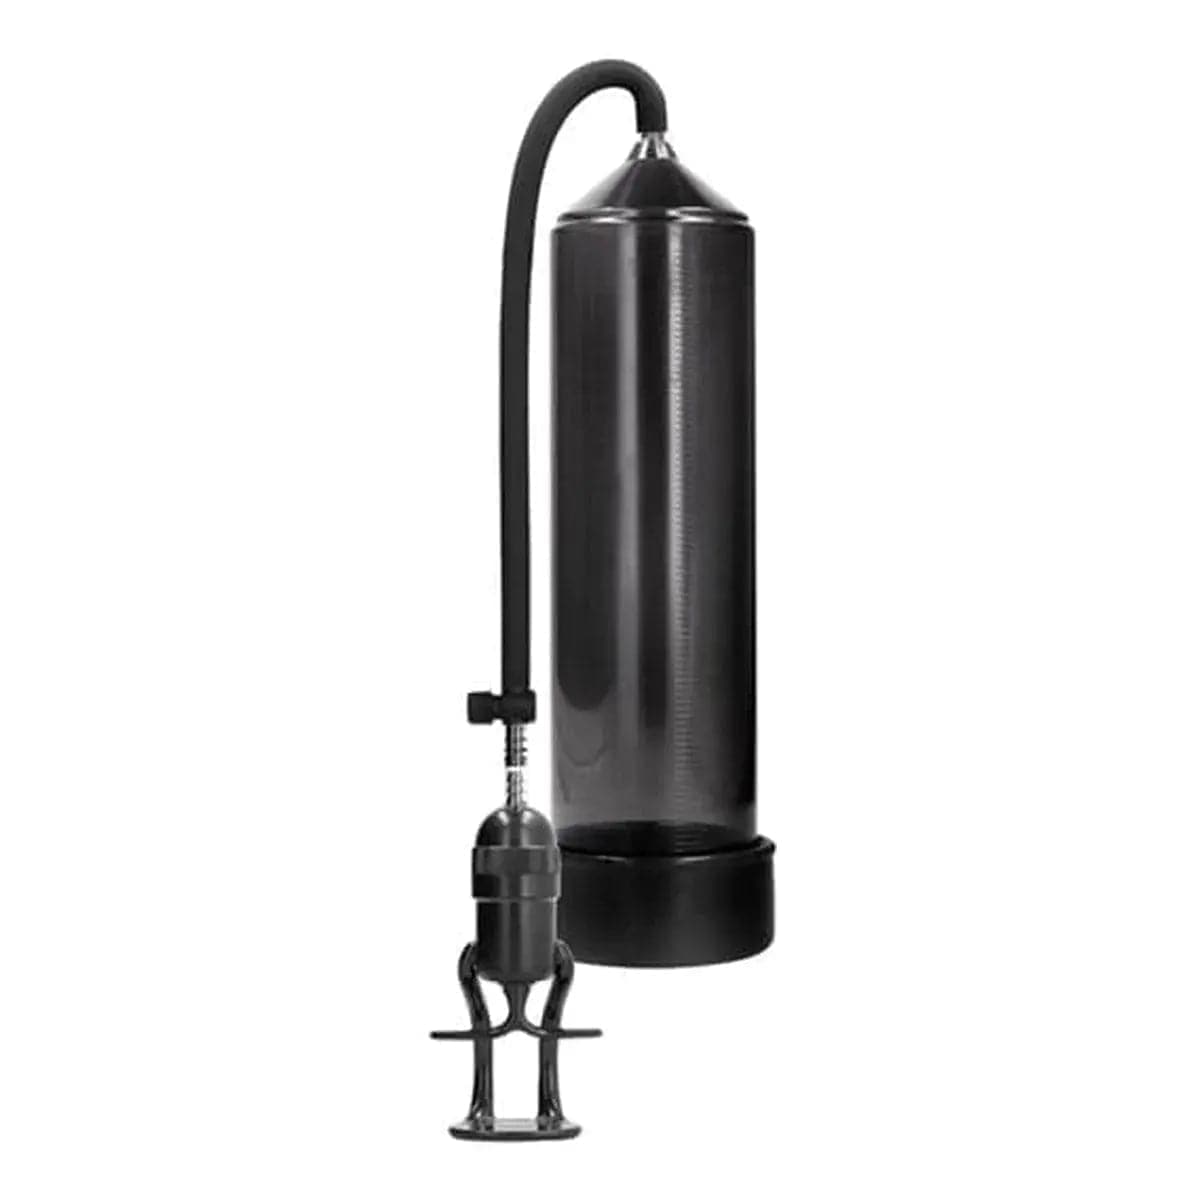 Deluxe Beginner Pump Preto, Sucção Muito Forte, 23cm Ø6cm